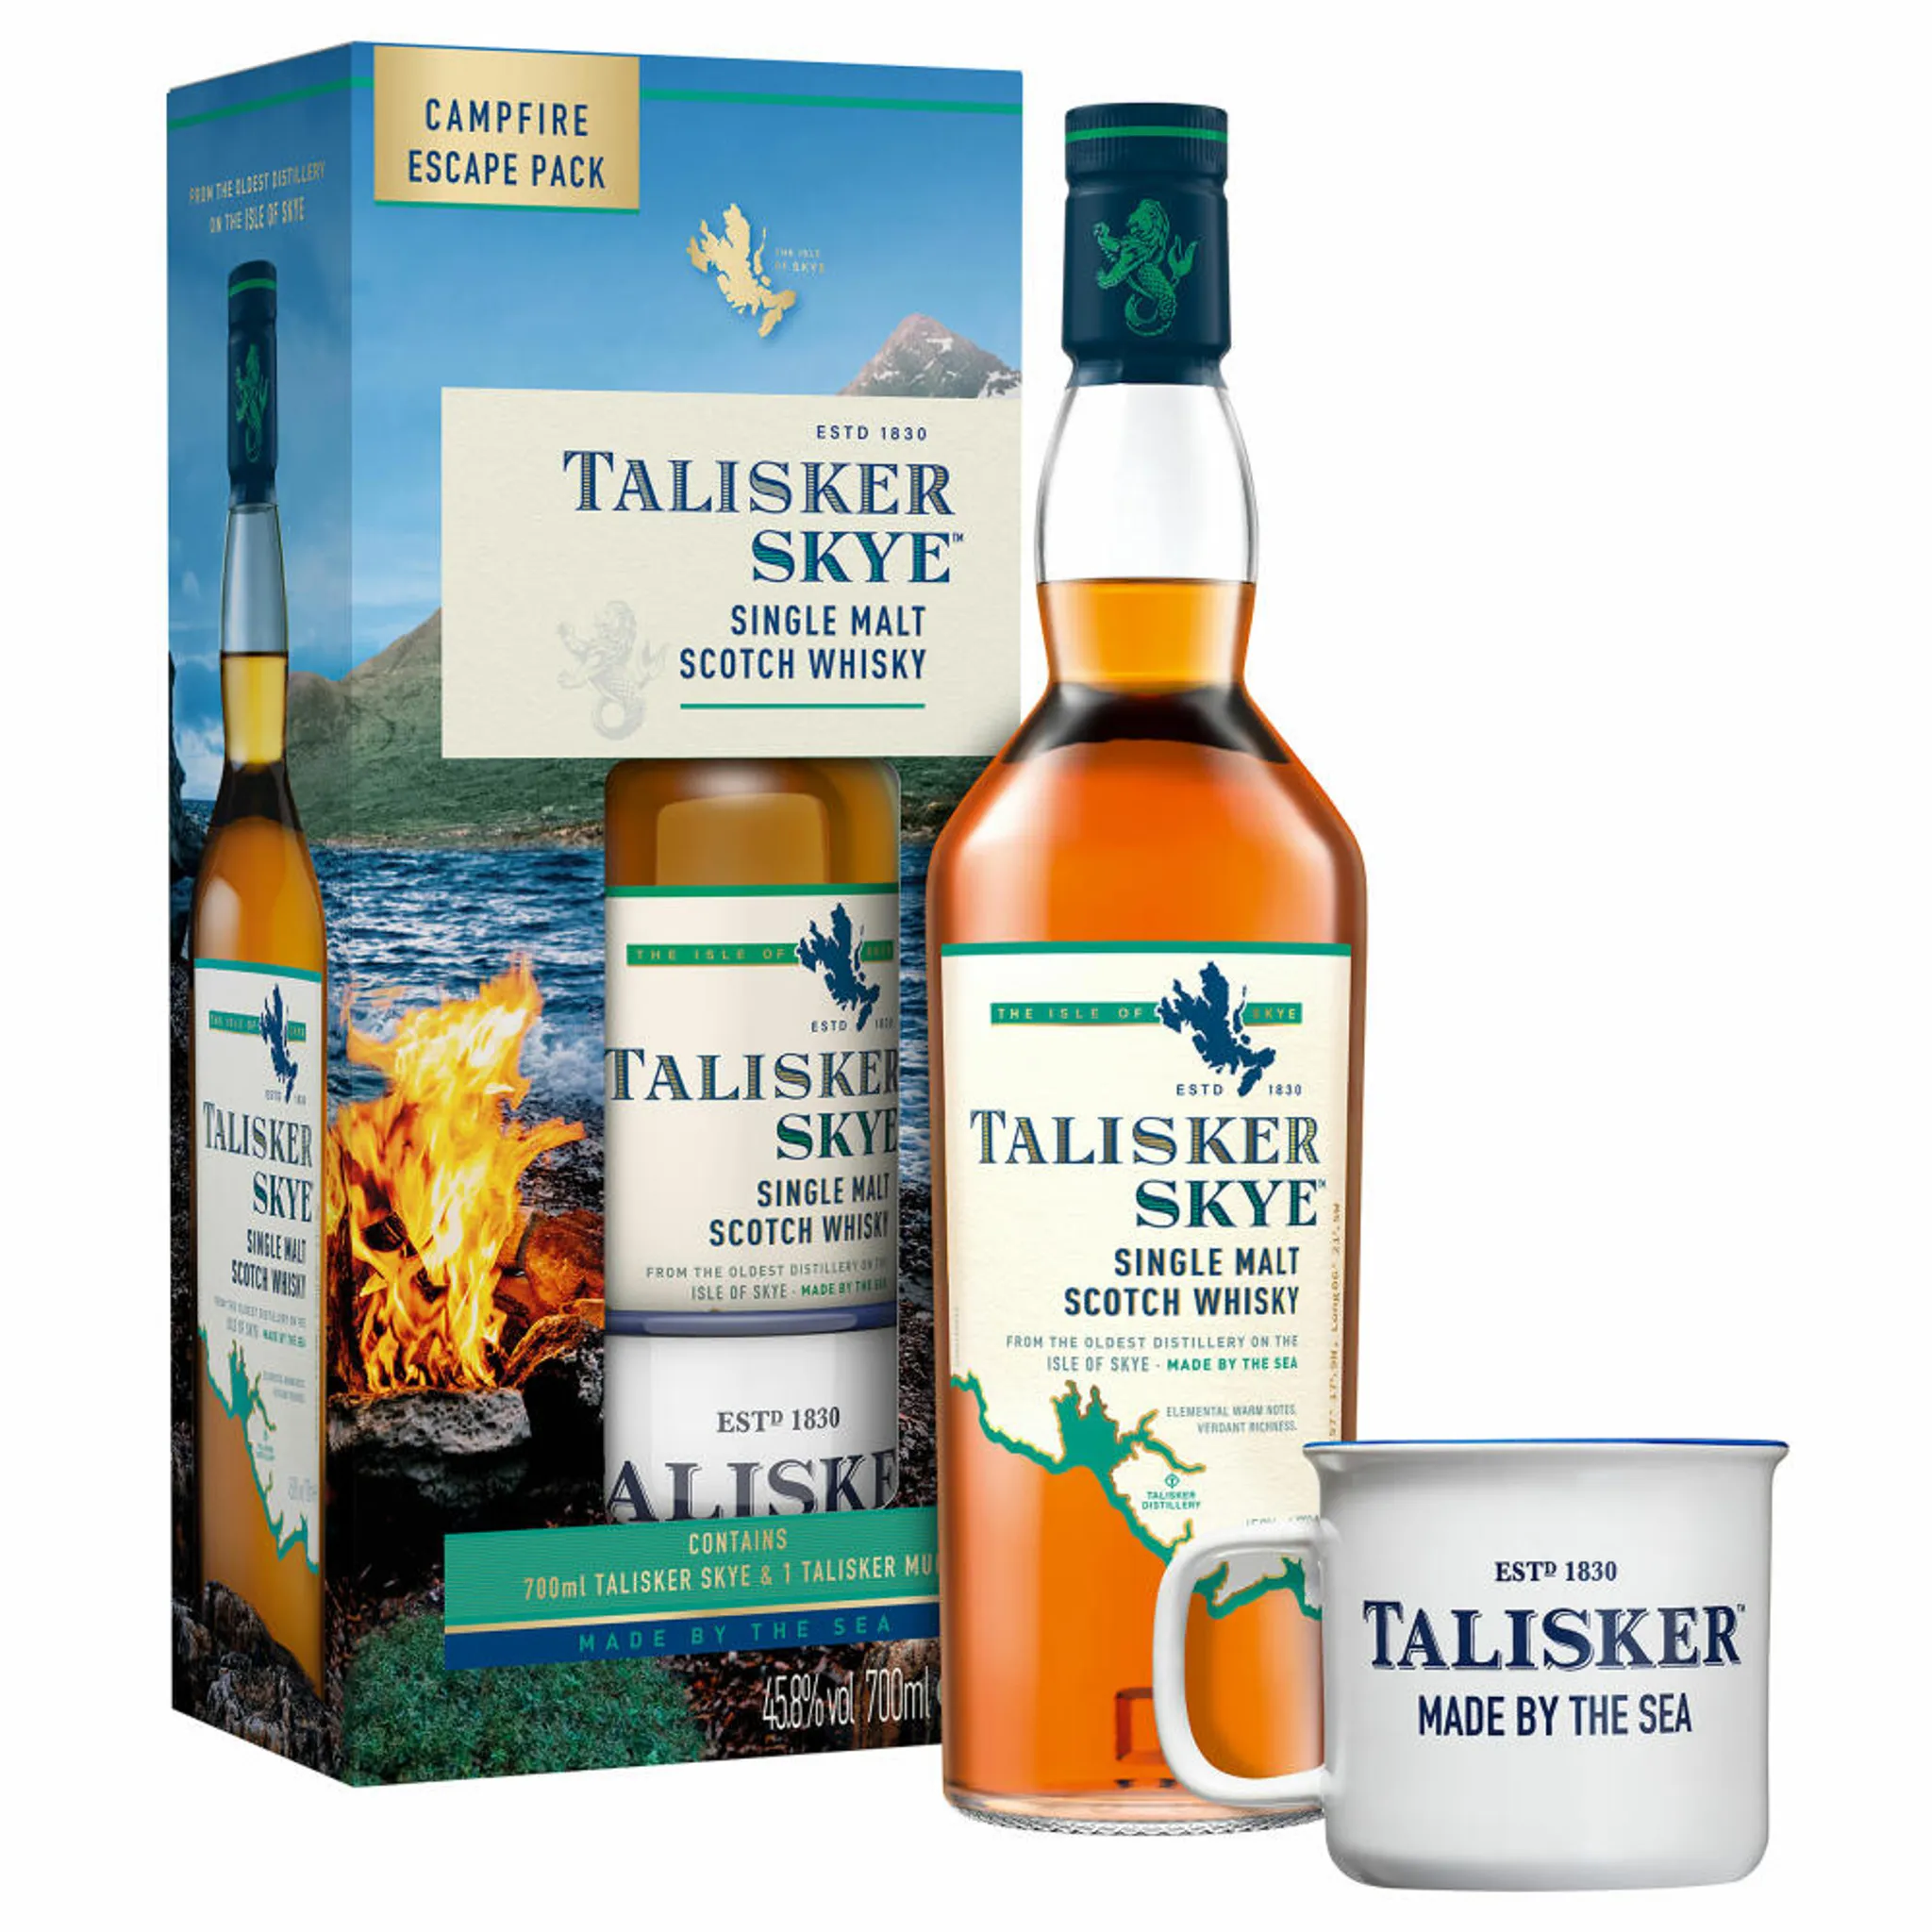 Malt Scotch Single Skye Talisker Whisky